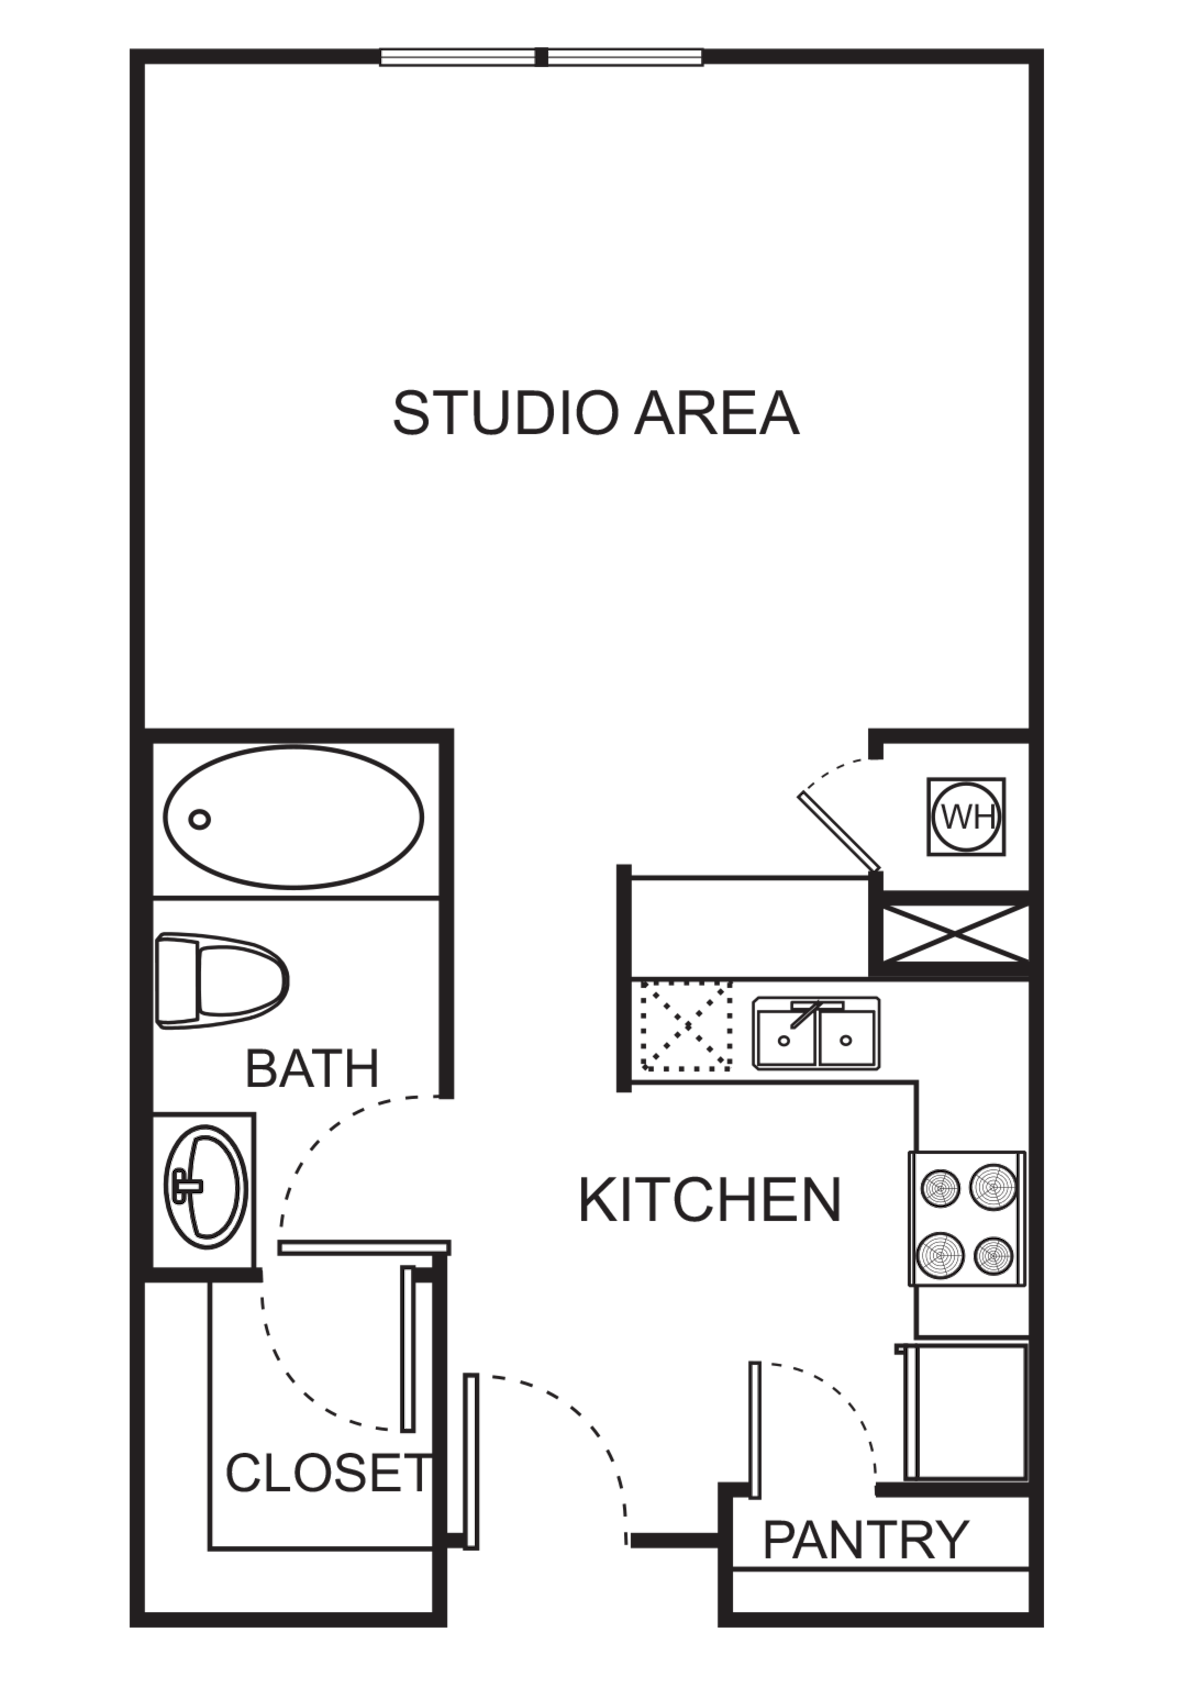 Floorplan diagram for S Studio - Harmony, showing Studio